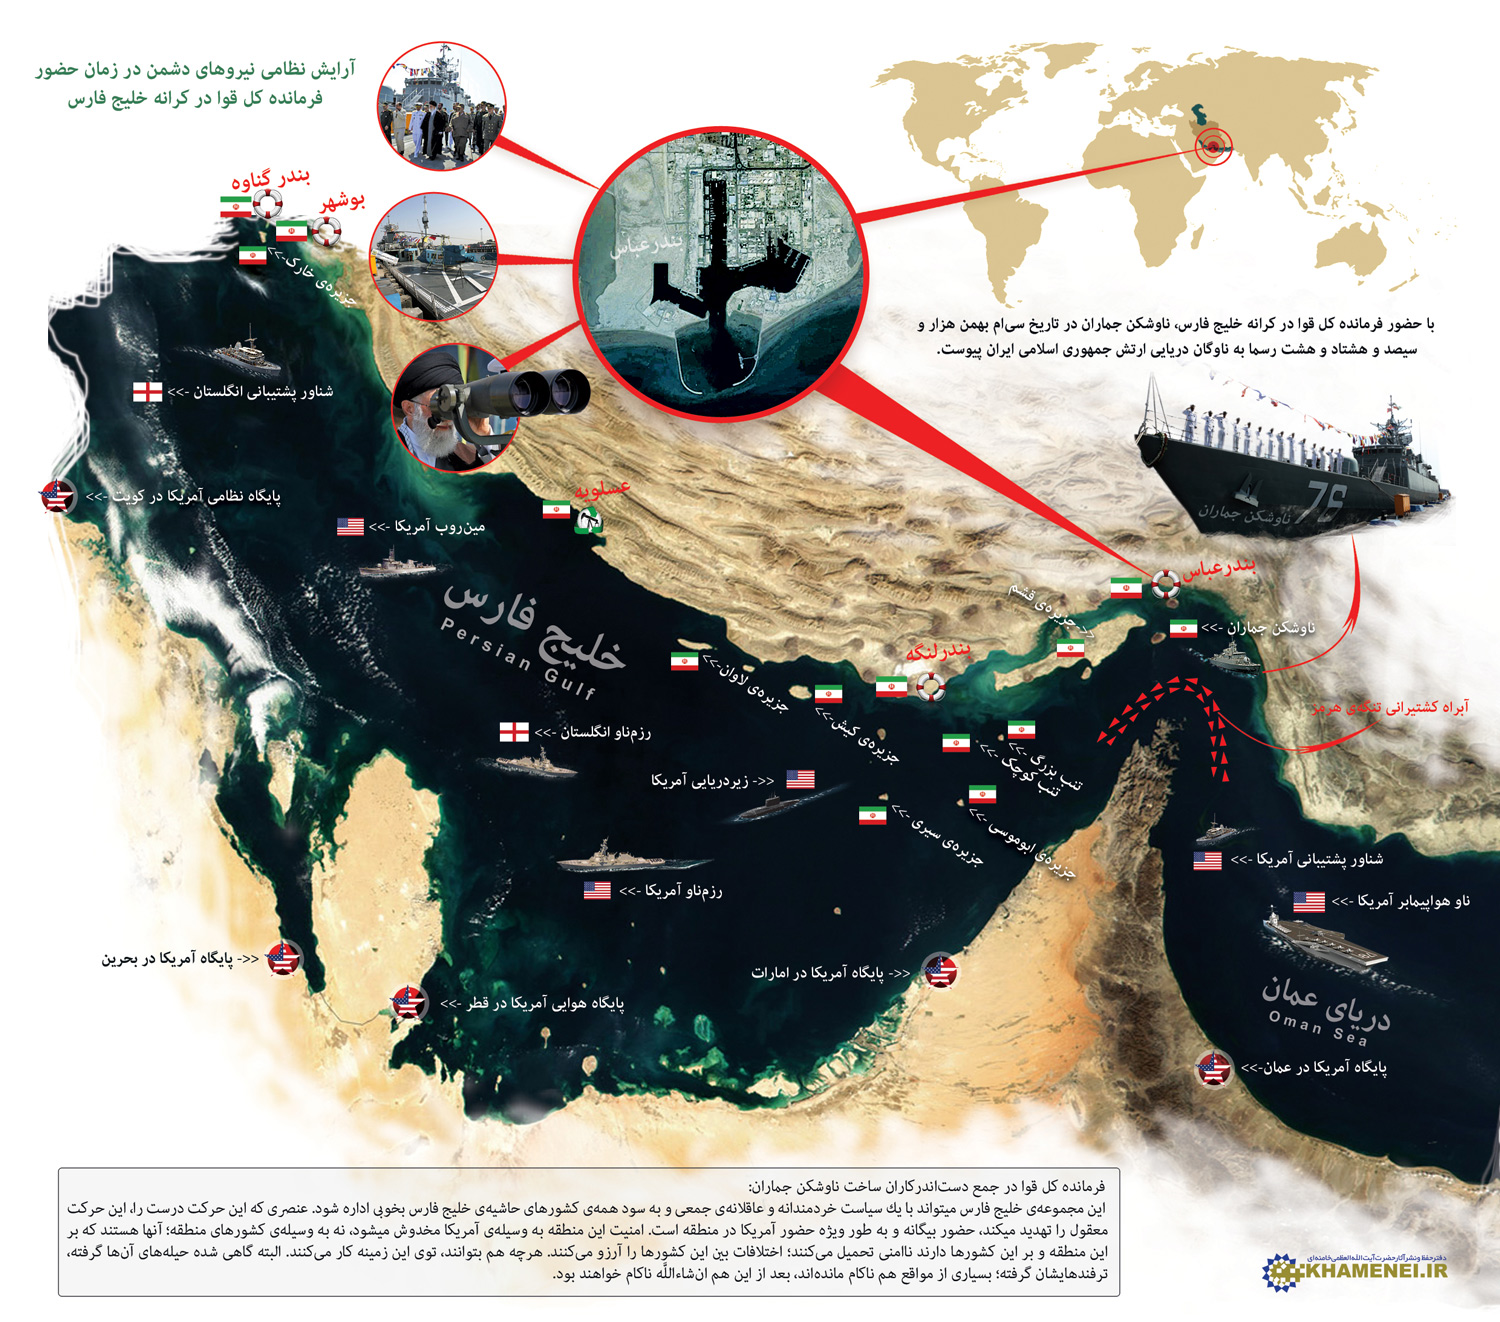 آرایش نظامی دشمنان در زمان حضور رهبر انقلاب در خلیج فارس